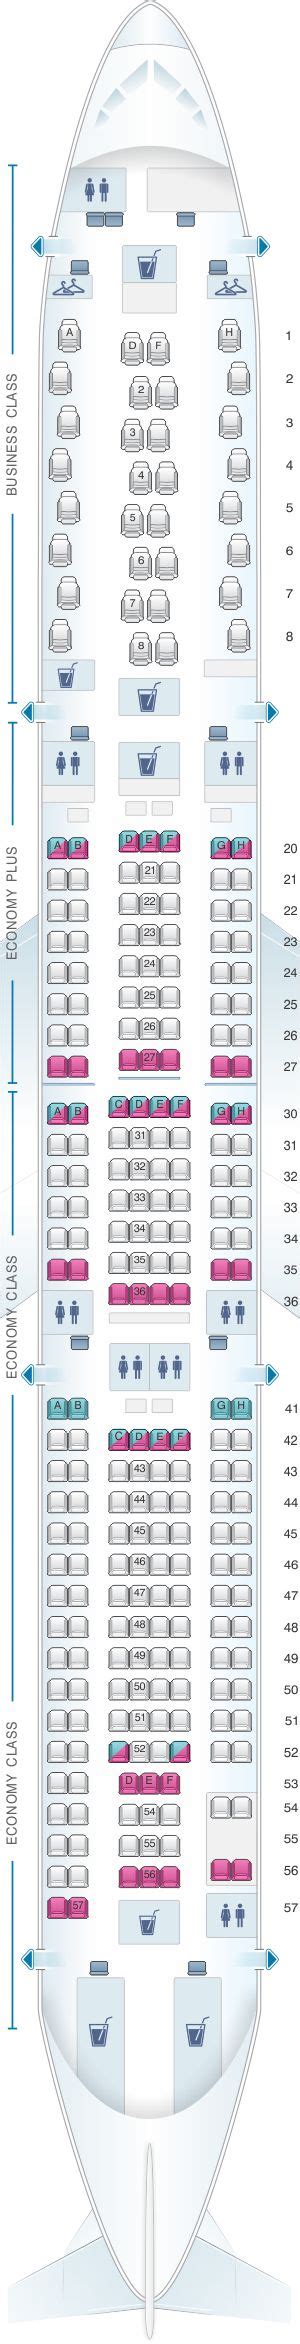 Seat Map Scandinavian Airlines Sas Airbus A330 300 Brasil